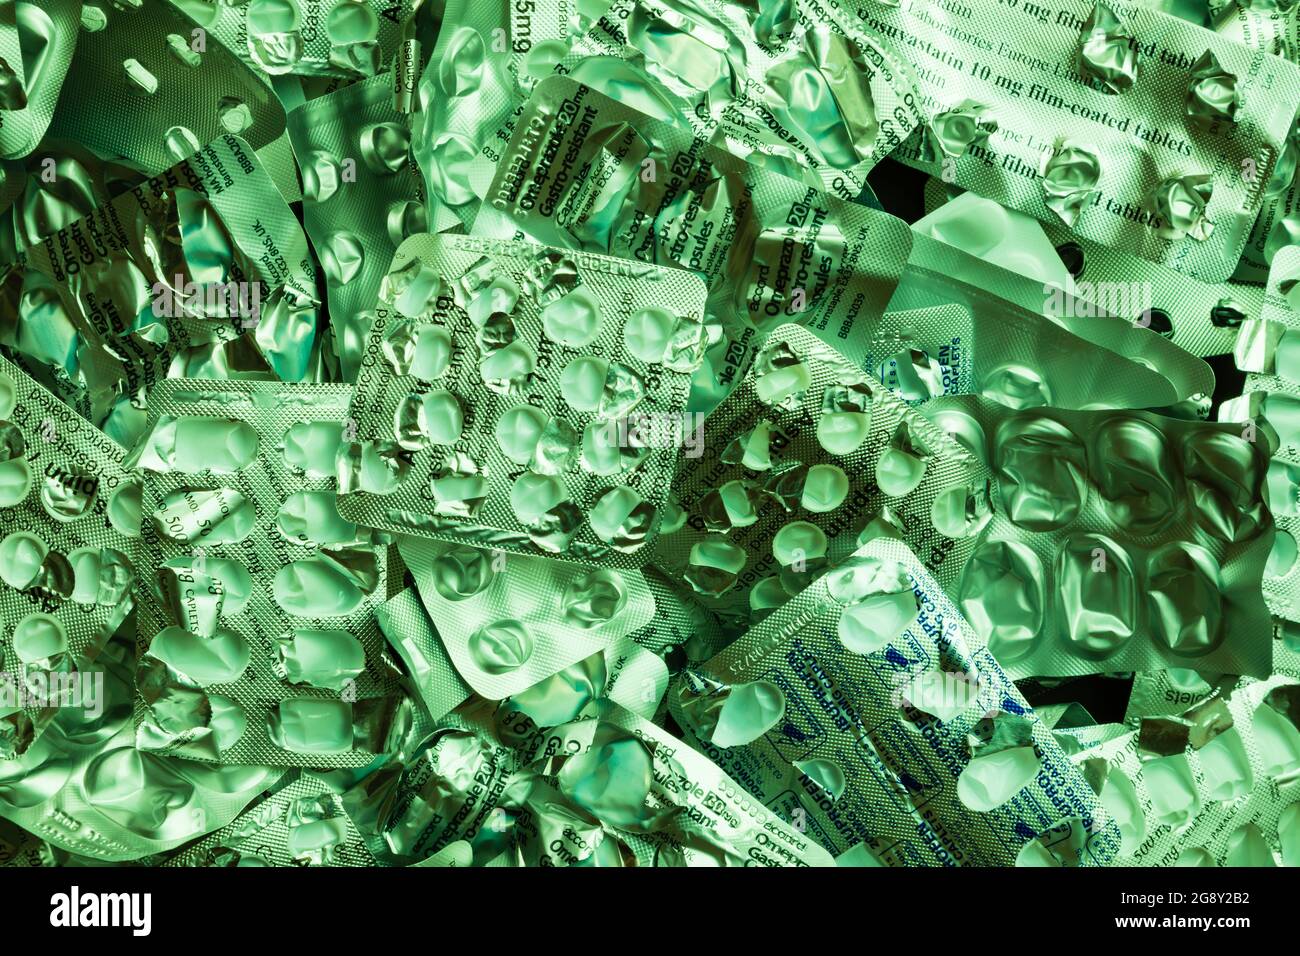 Grün getönte Abfälle verschreibungspflichtige Medikationstabelle Blisterpackungen warten auf Recycling. Stockfoto